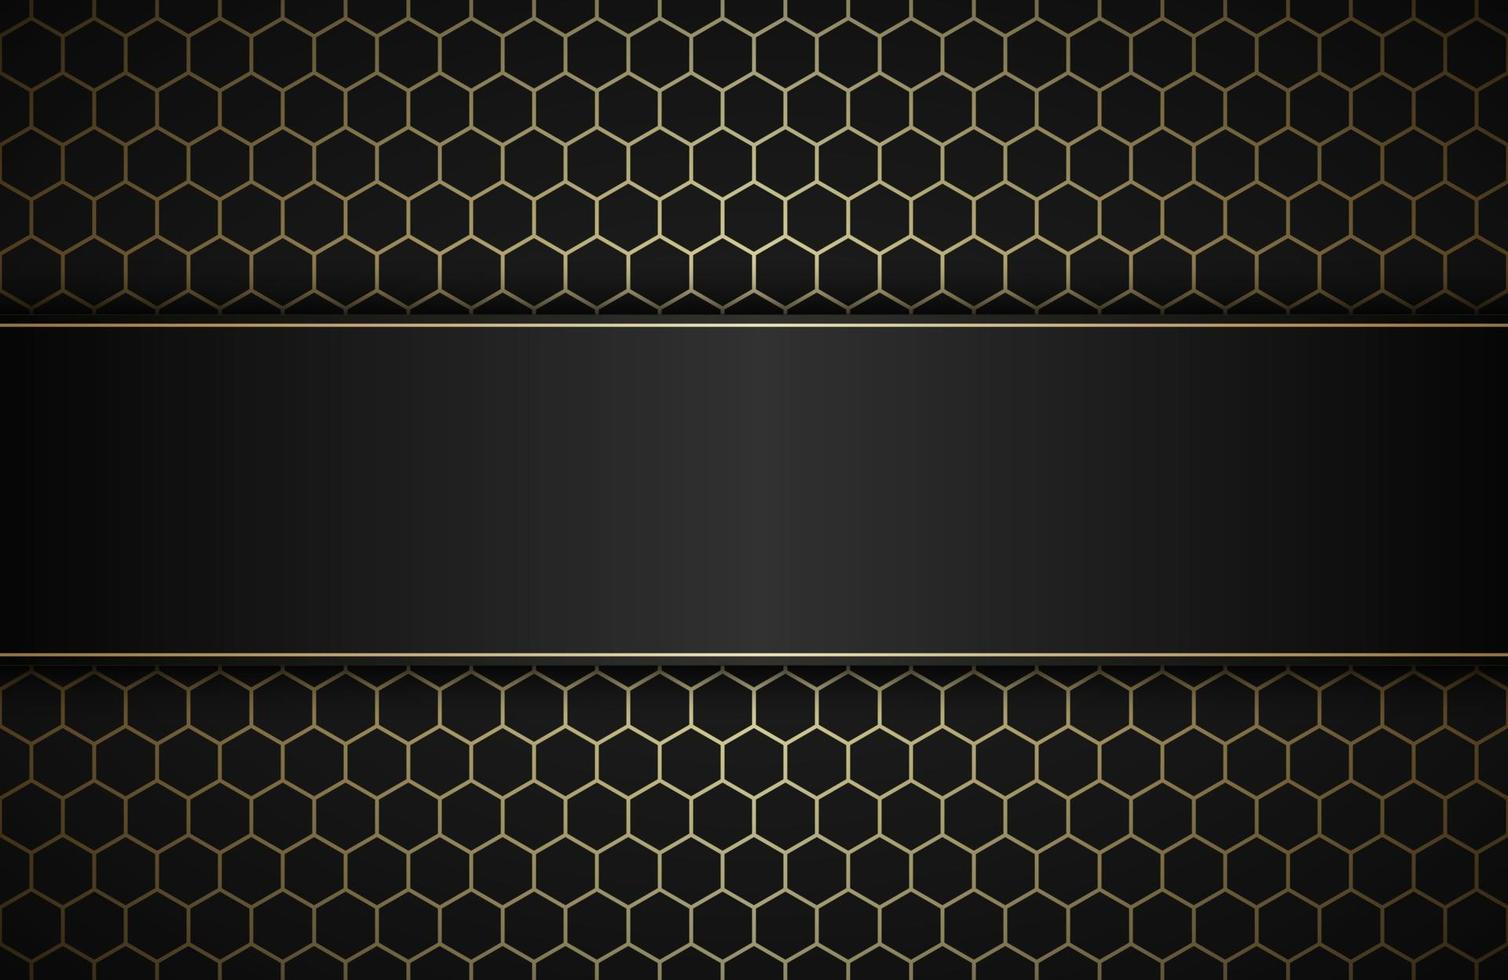 geometrische veelhoeken achtergrond met vrije ruimte voor uw tekst. abstract zwart en goud metallic behang. eenvoudige vectorillustratie vector